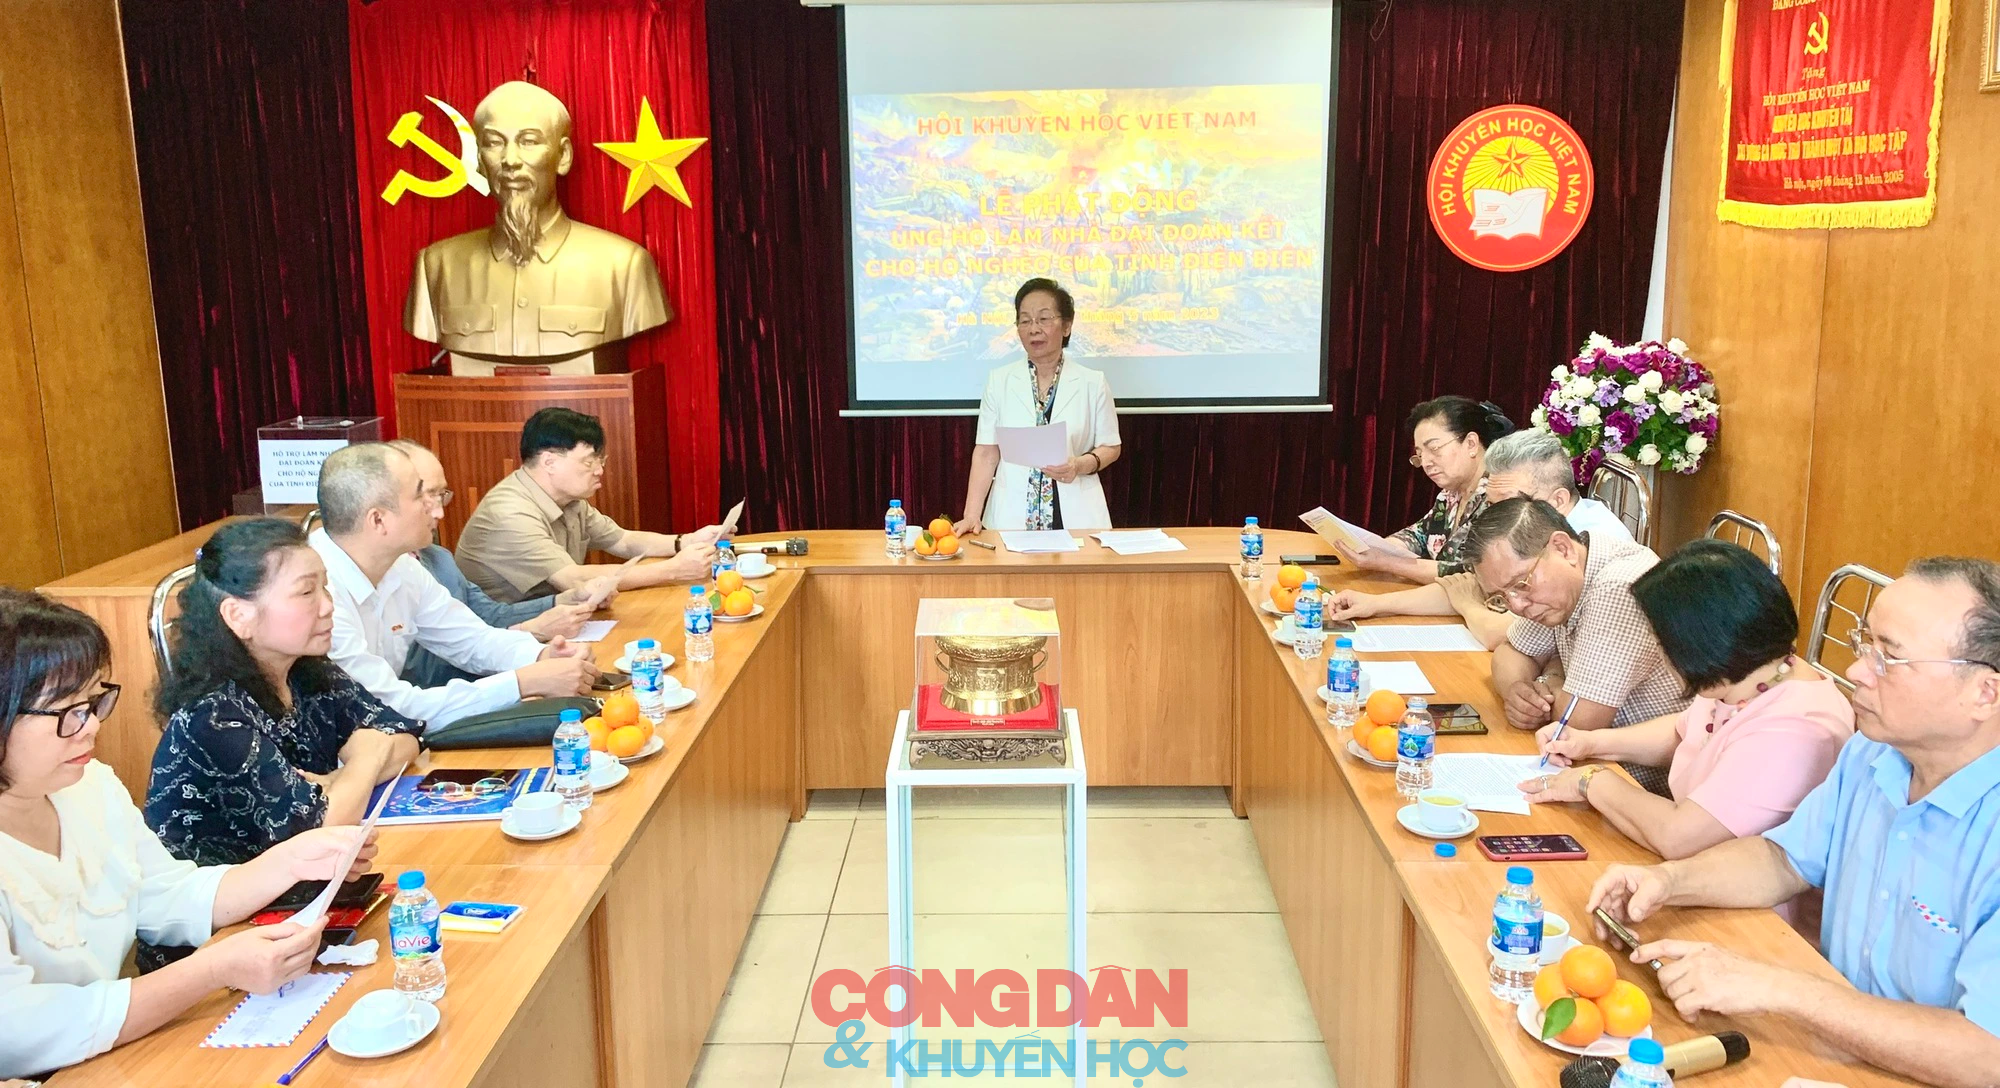 Trung ương Hội Khuyến học Việt Nam phát động ủng hộ làm nhà đại đoàn kết cho hộ nghèo của tỉnh Điện Biên. - Ảnh 1.